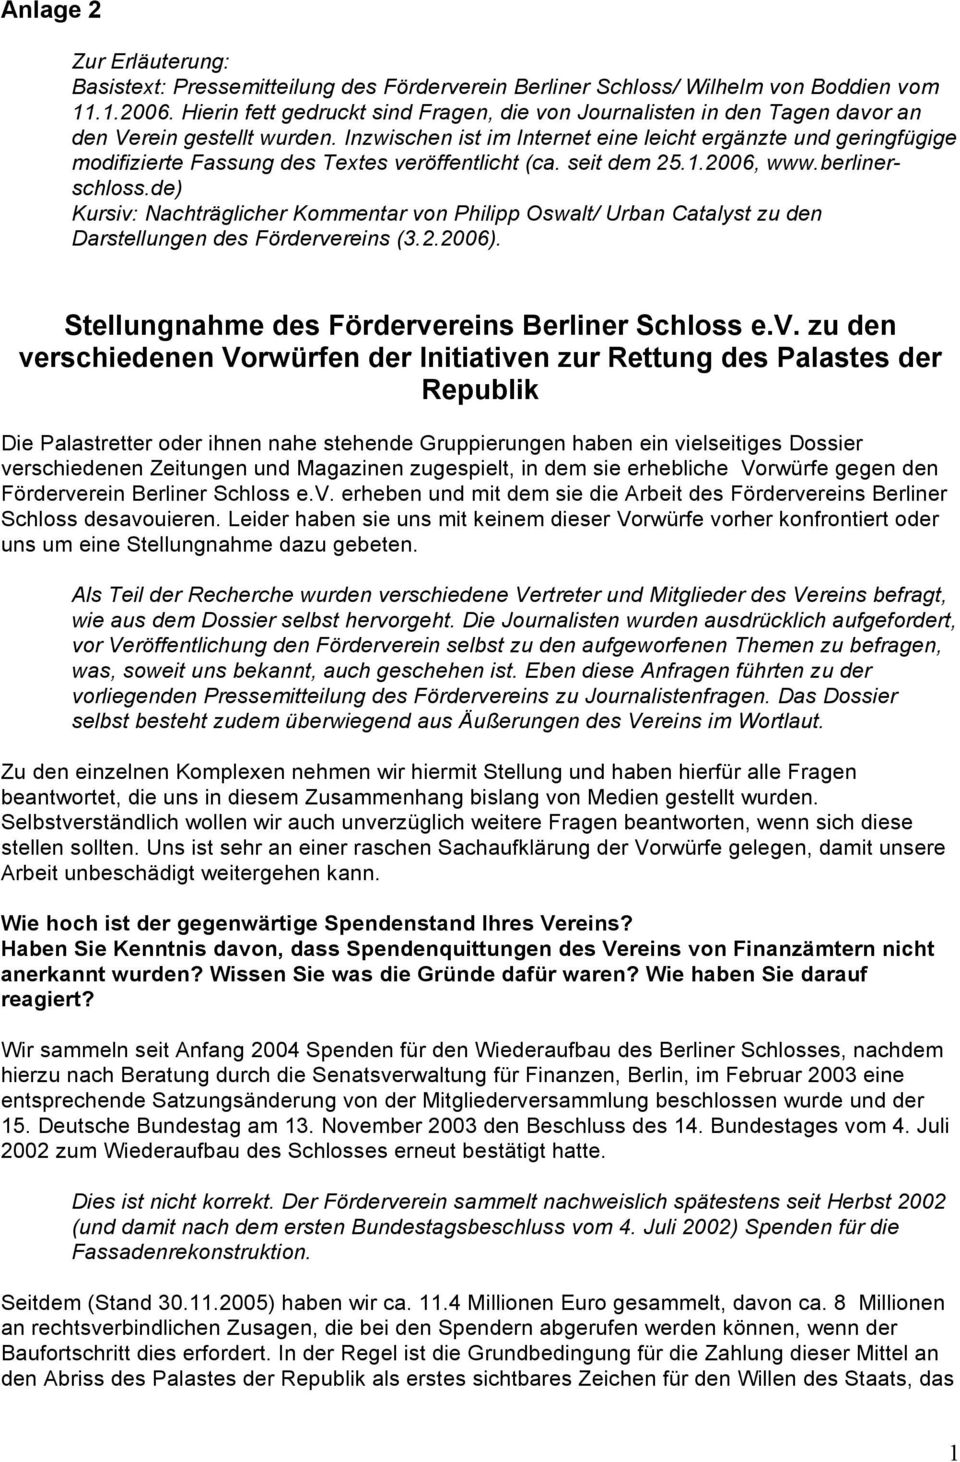 Inzwischen ist im Internet eine leicht ergänzte und geringfügige modifizierte Fassung des Textes veröffentlicht (ca. seit dem 25.1.2006, www.berlinerschloss.